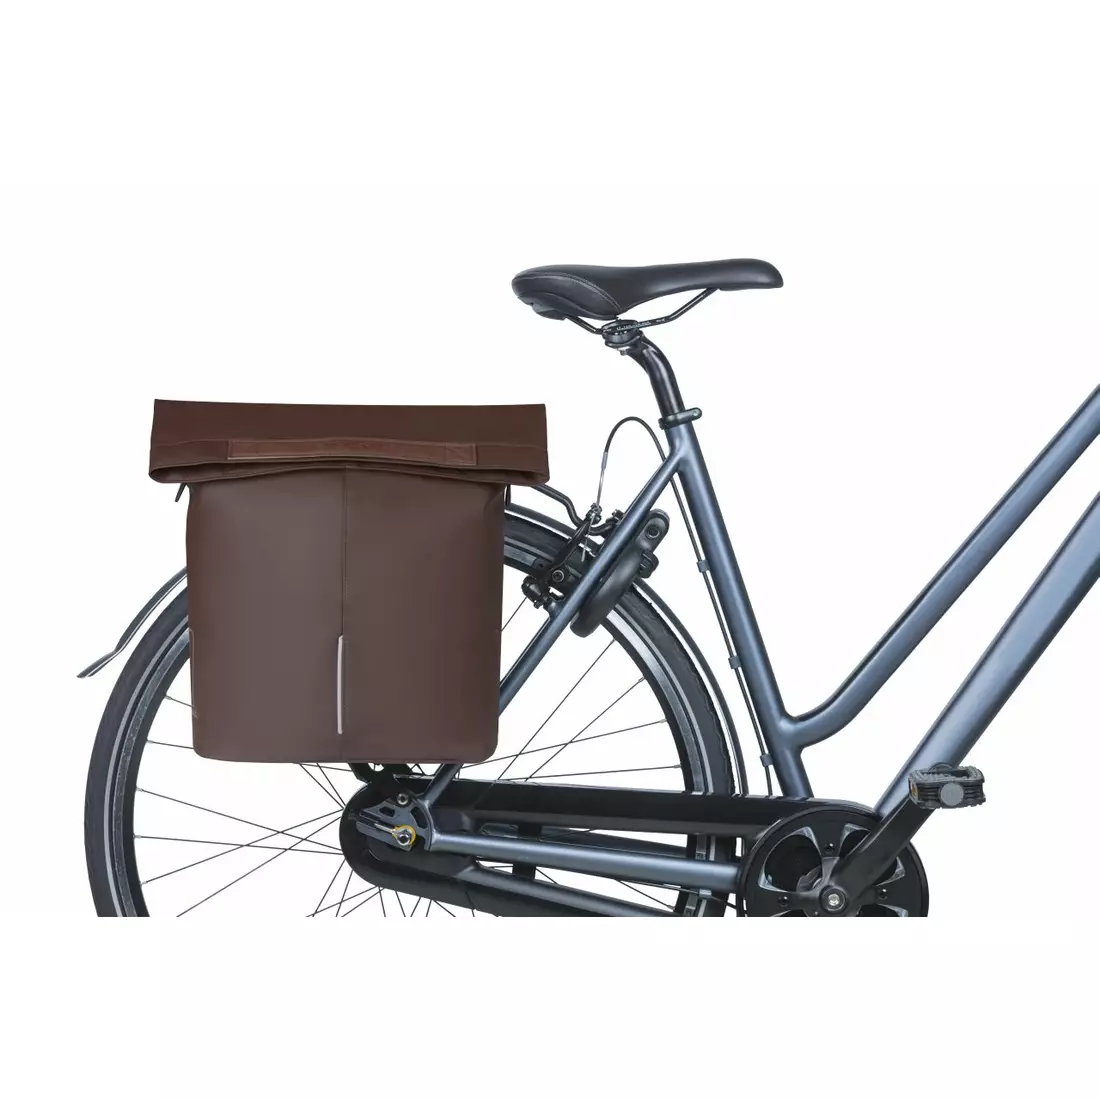 BASIL CITY SHOPPER VEGAN LEATHER kerékpár hátsó táska 14 L, barna